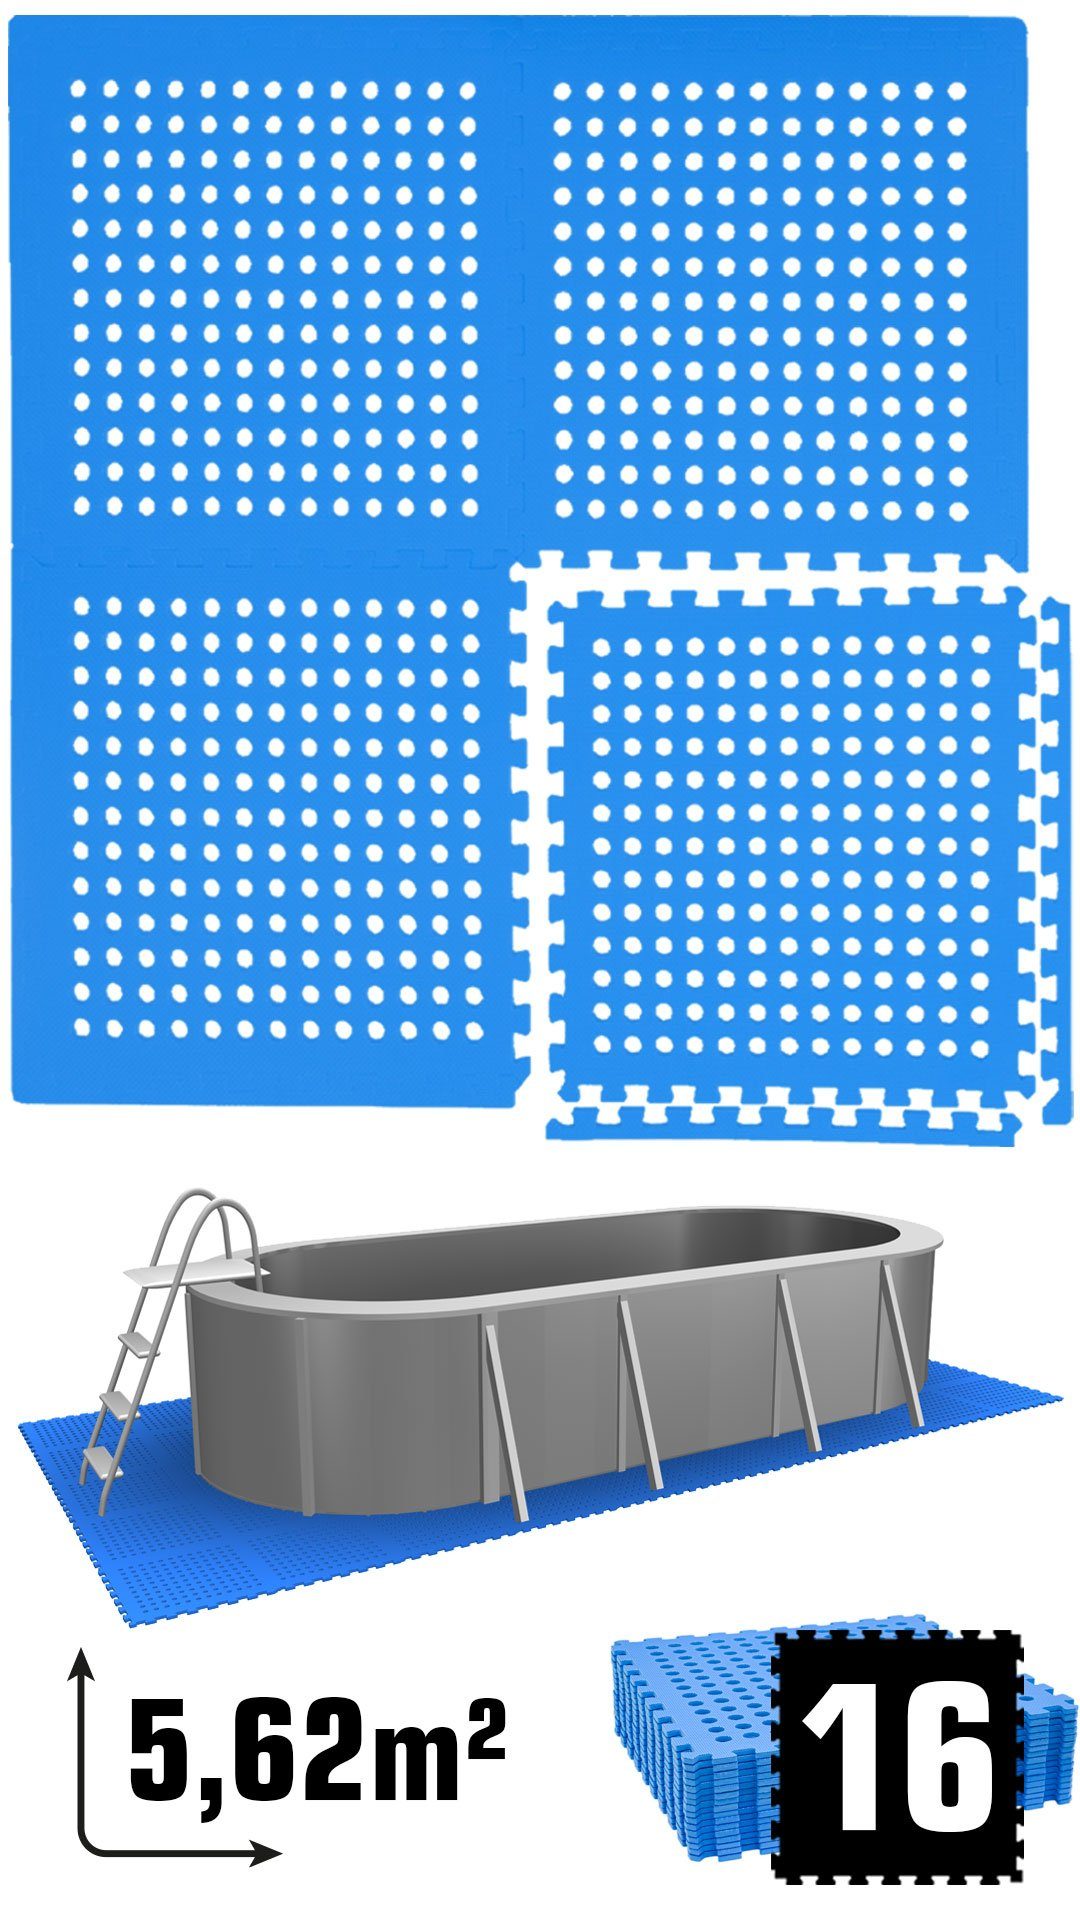 Poolunterlage Unterlegmatten, Unterlage m² 62x62 5,6 Set EVA Bodenmatte Outdoor Matten 16 eyepower